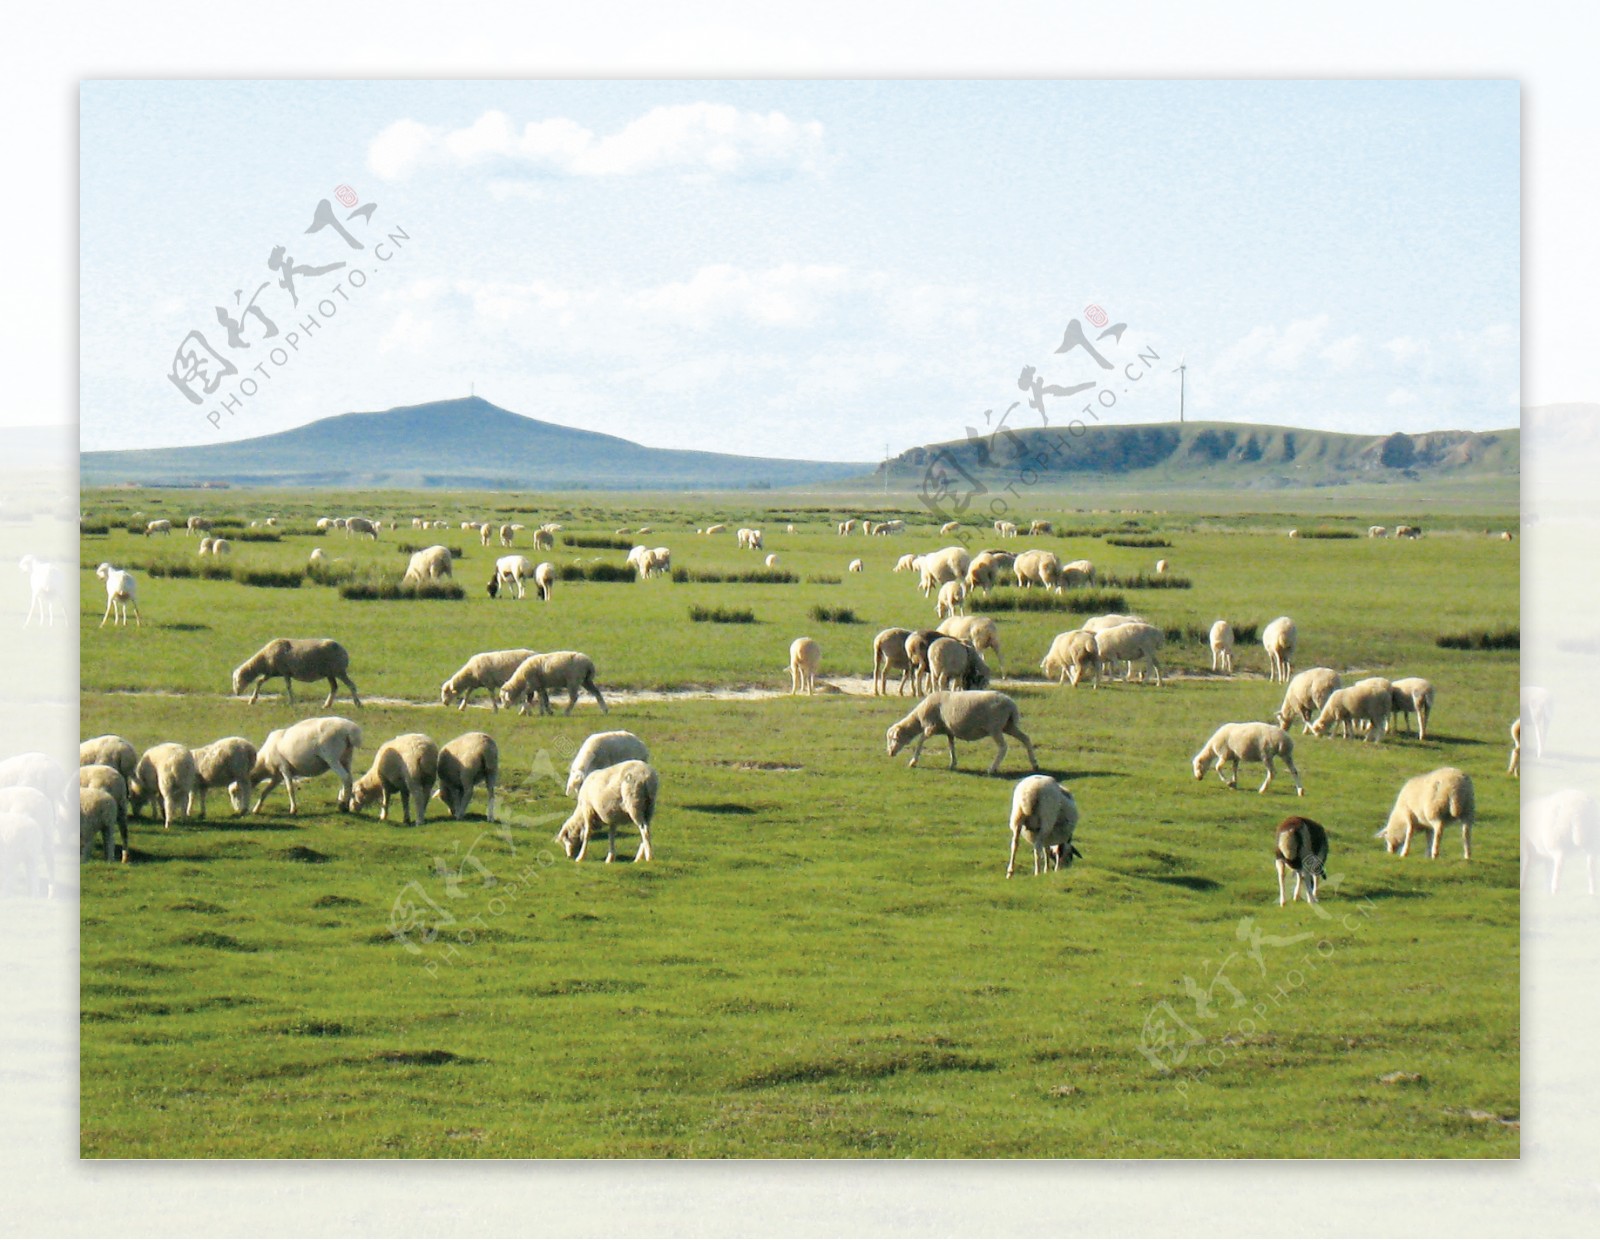 内蒙古风景图片